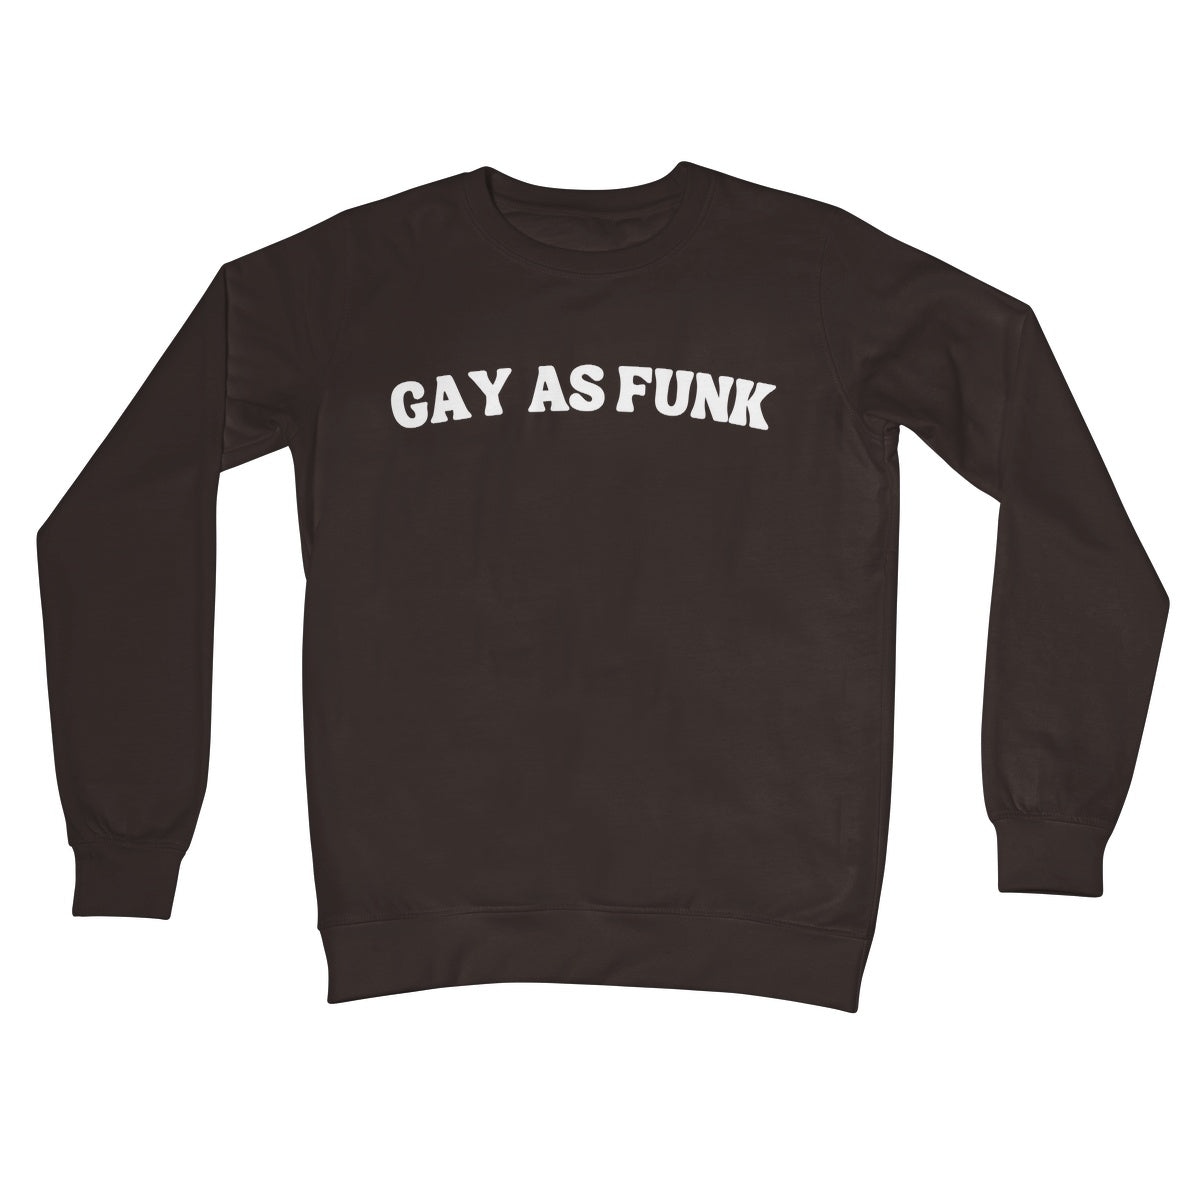 gay as funk jumper brown